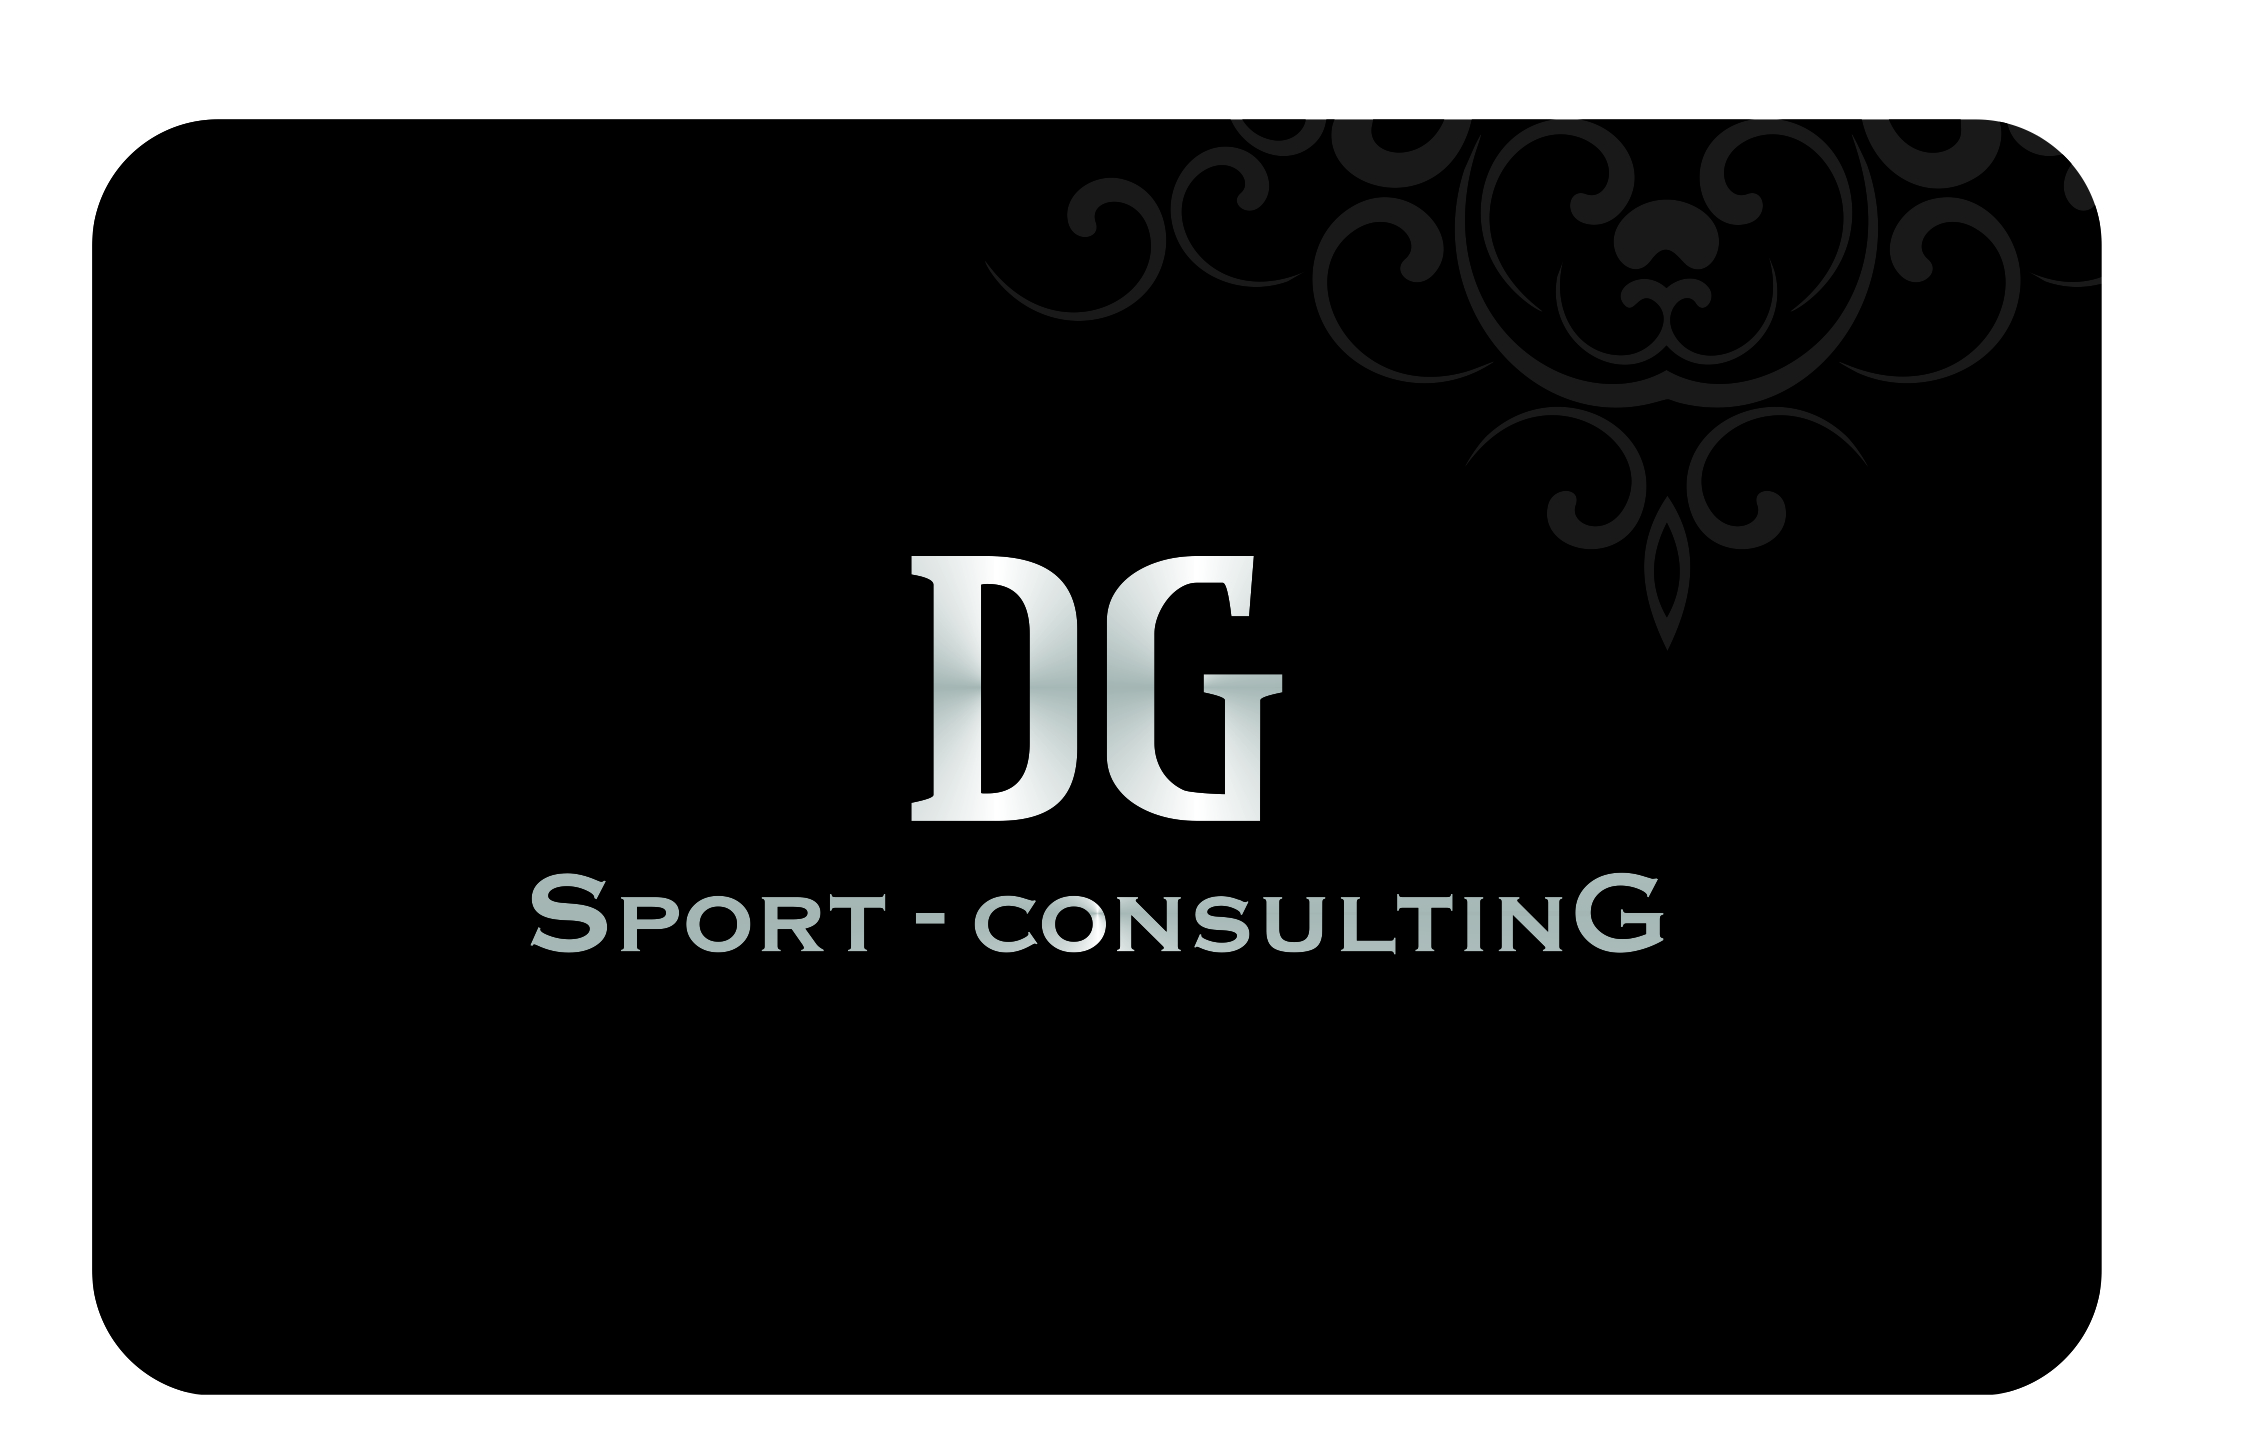 Dg sport consulting